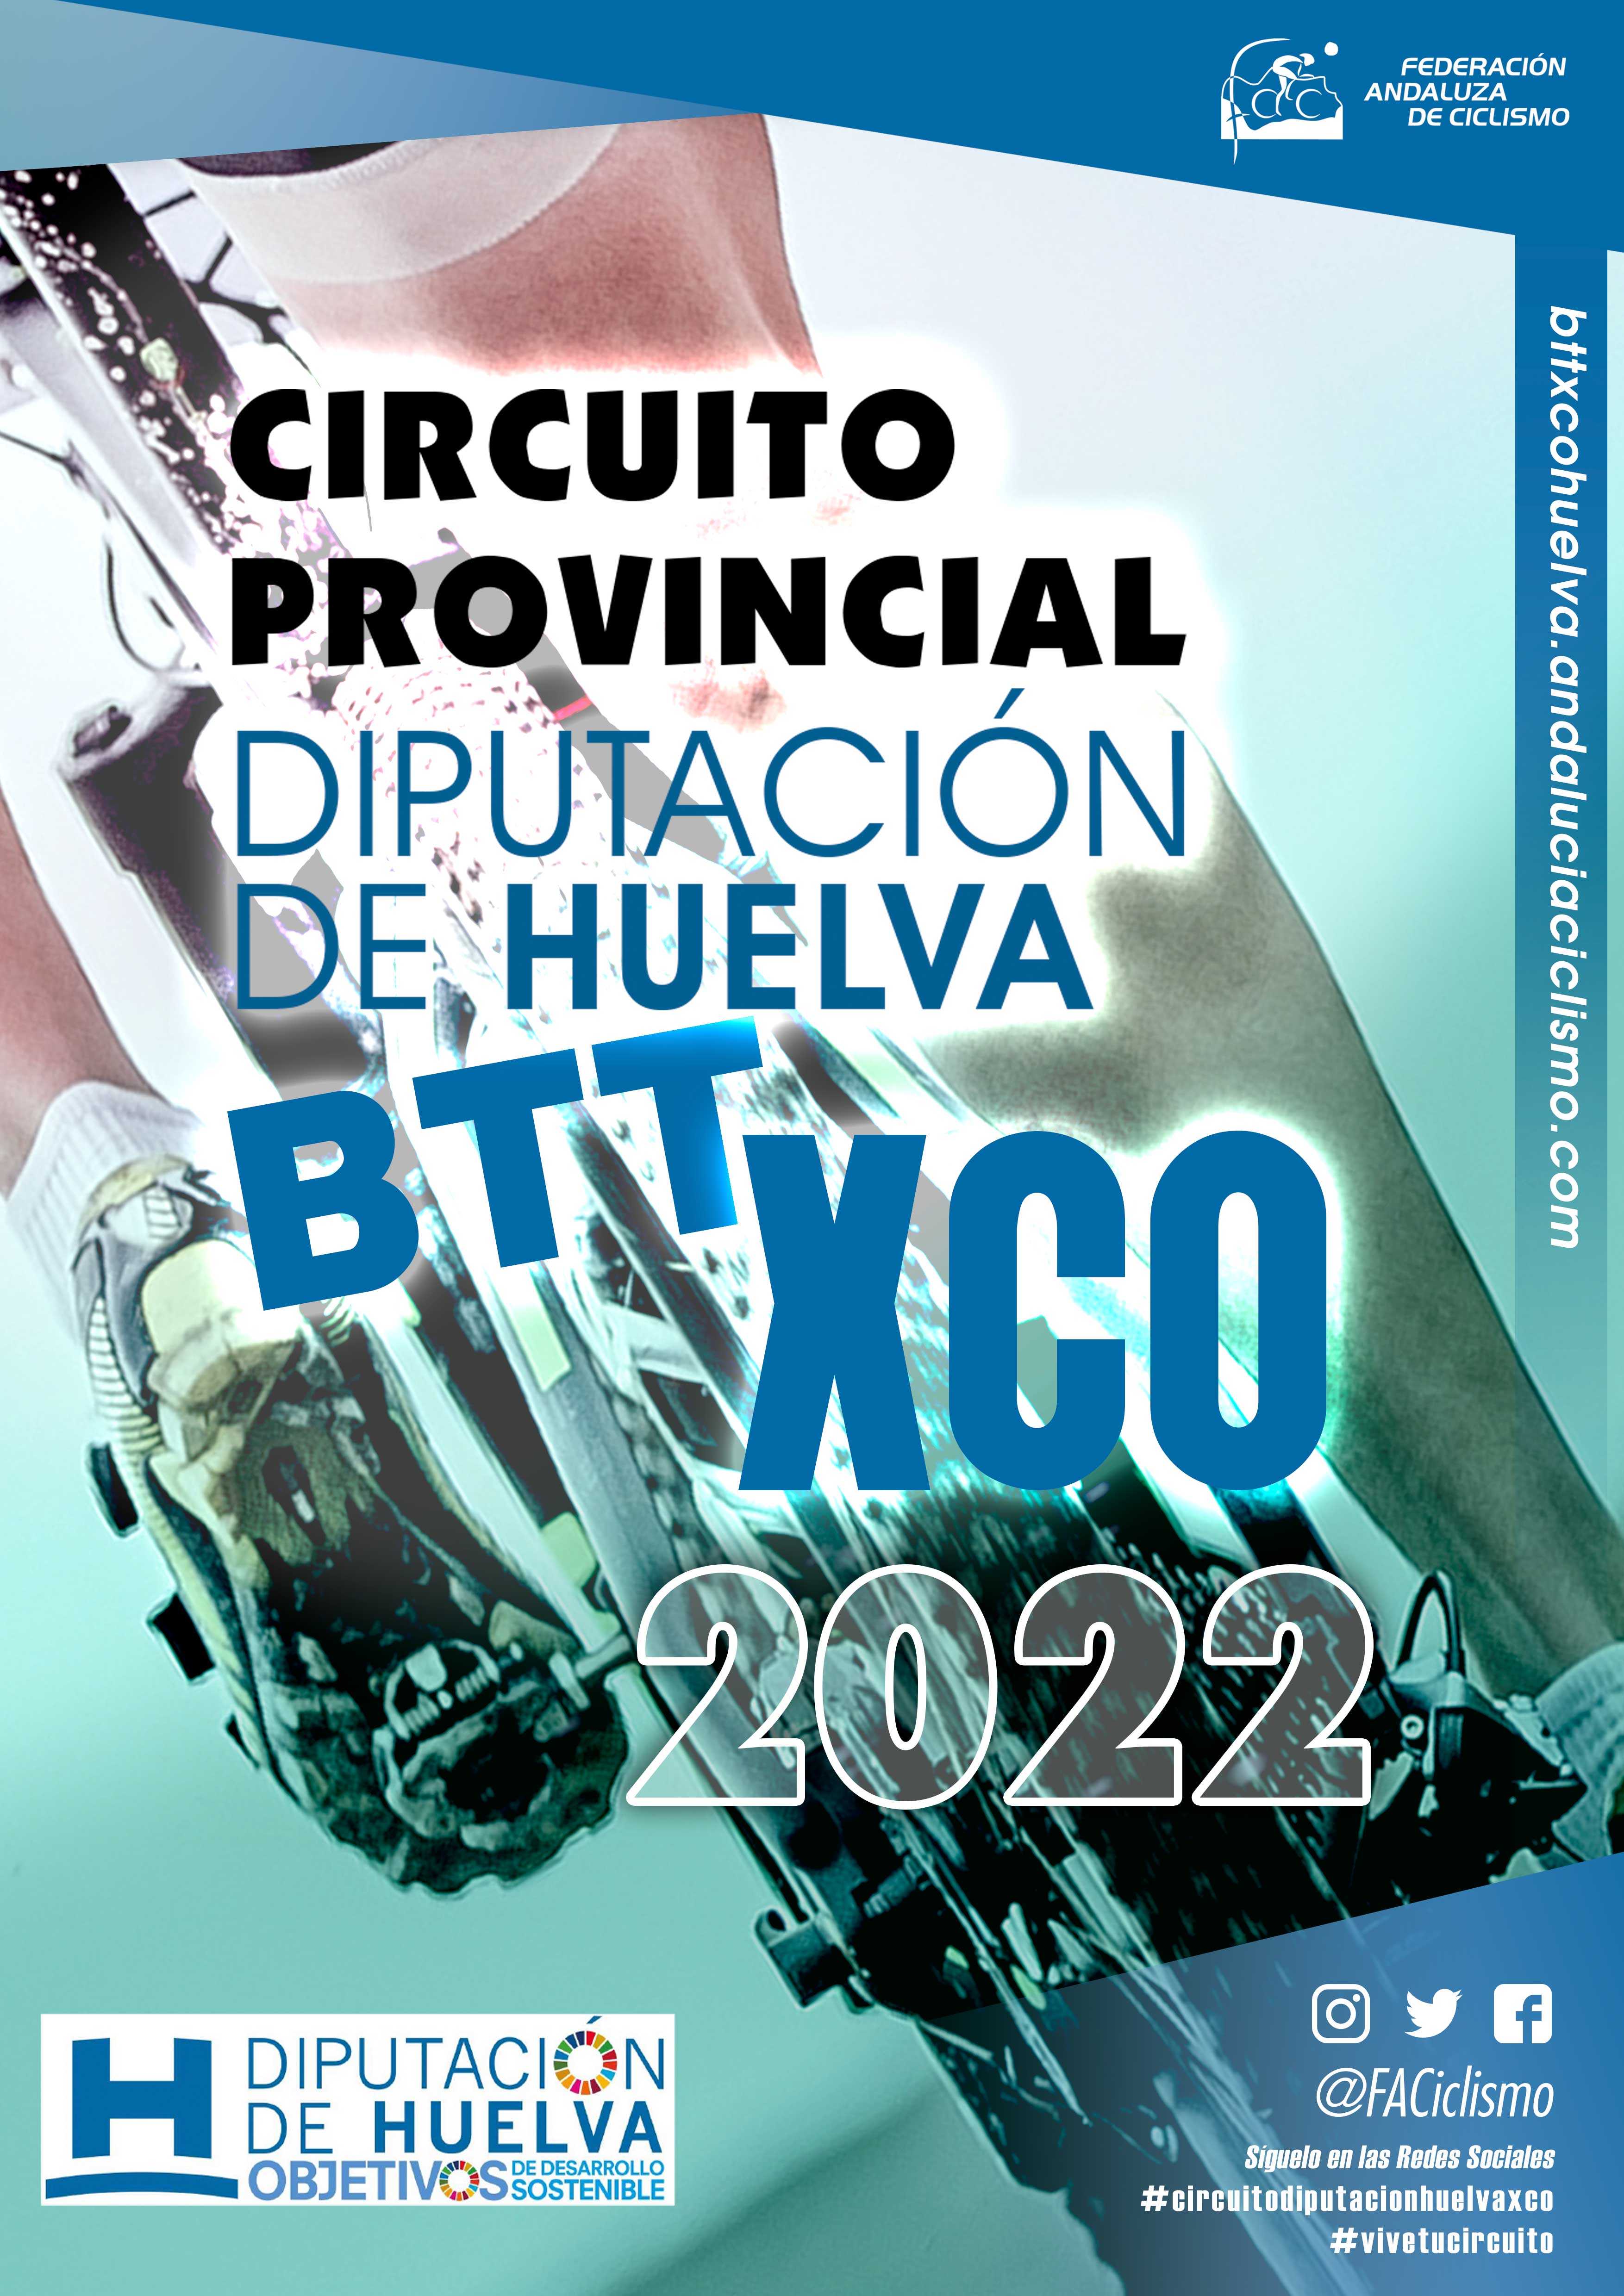 El Parque Moret espera ya al Circuito Diputación Huelva BTT XCO 2022